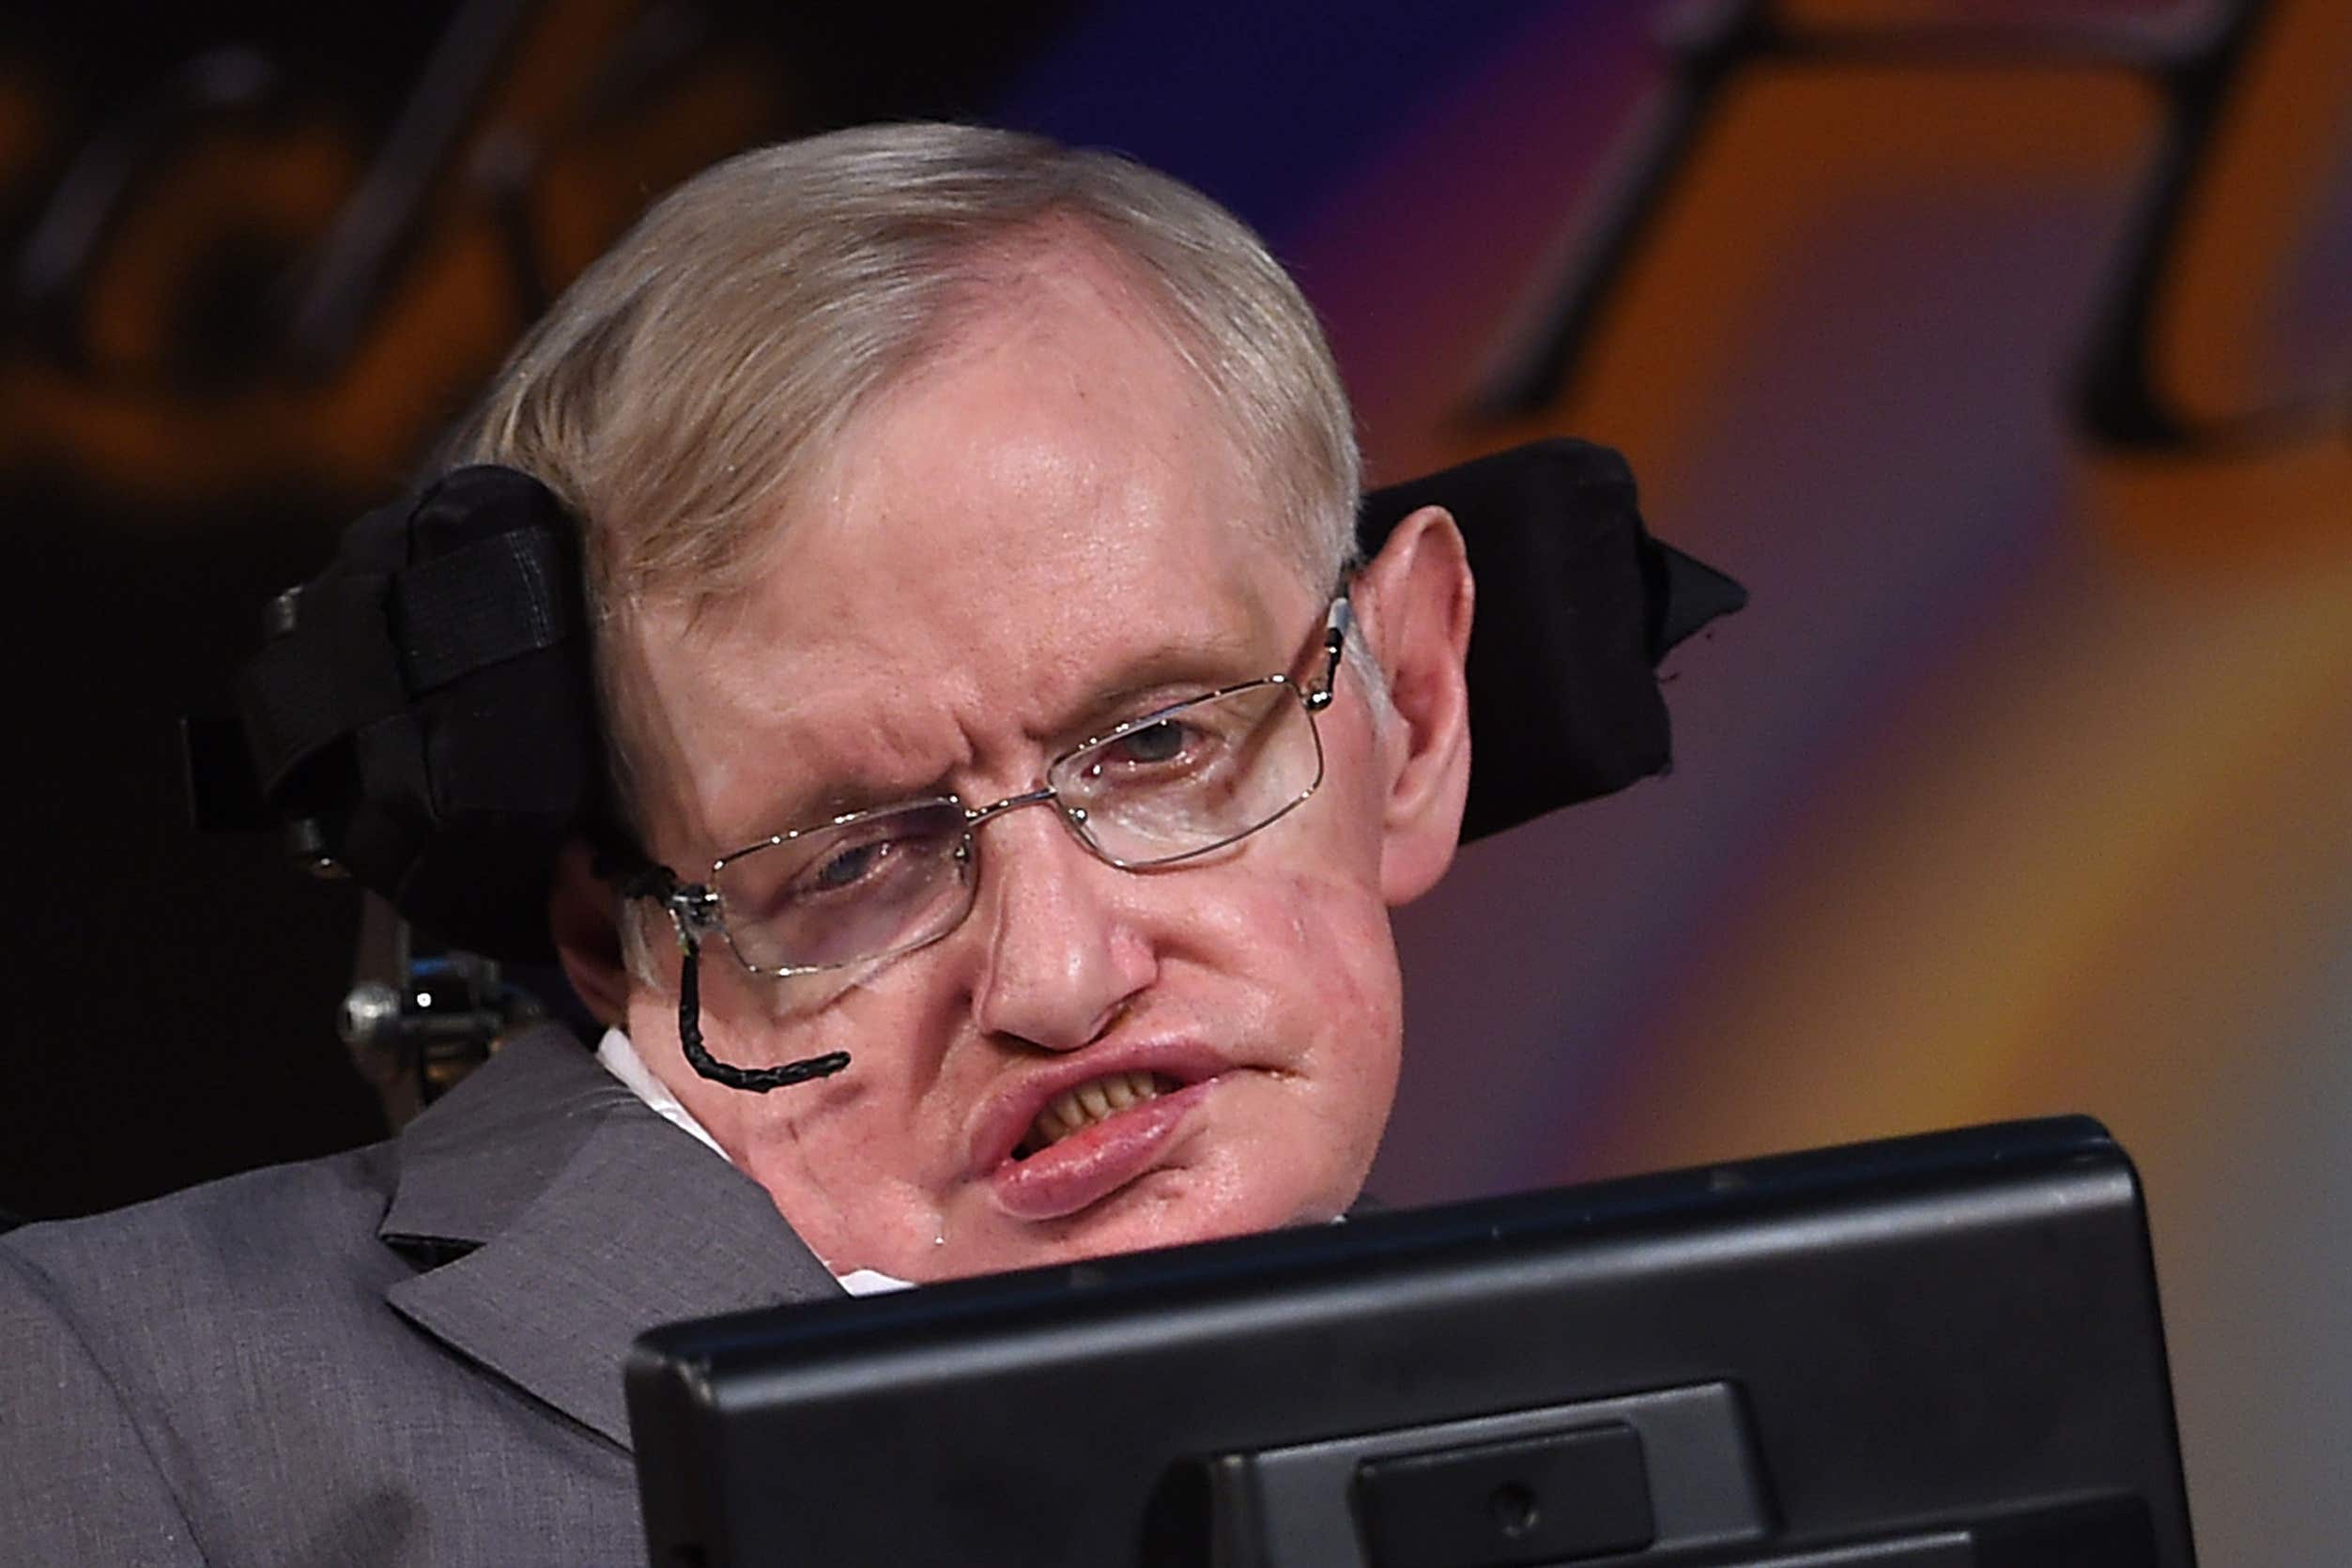 Stephen Hawking died in 2018 aged 76. (Joe Giddens/ PA)